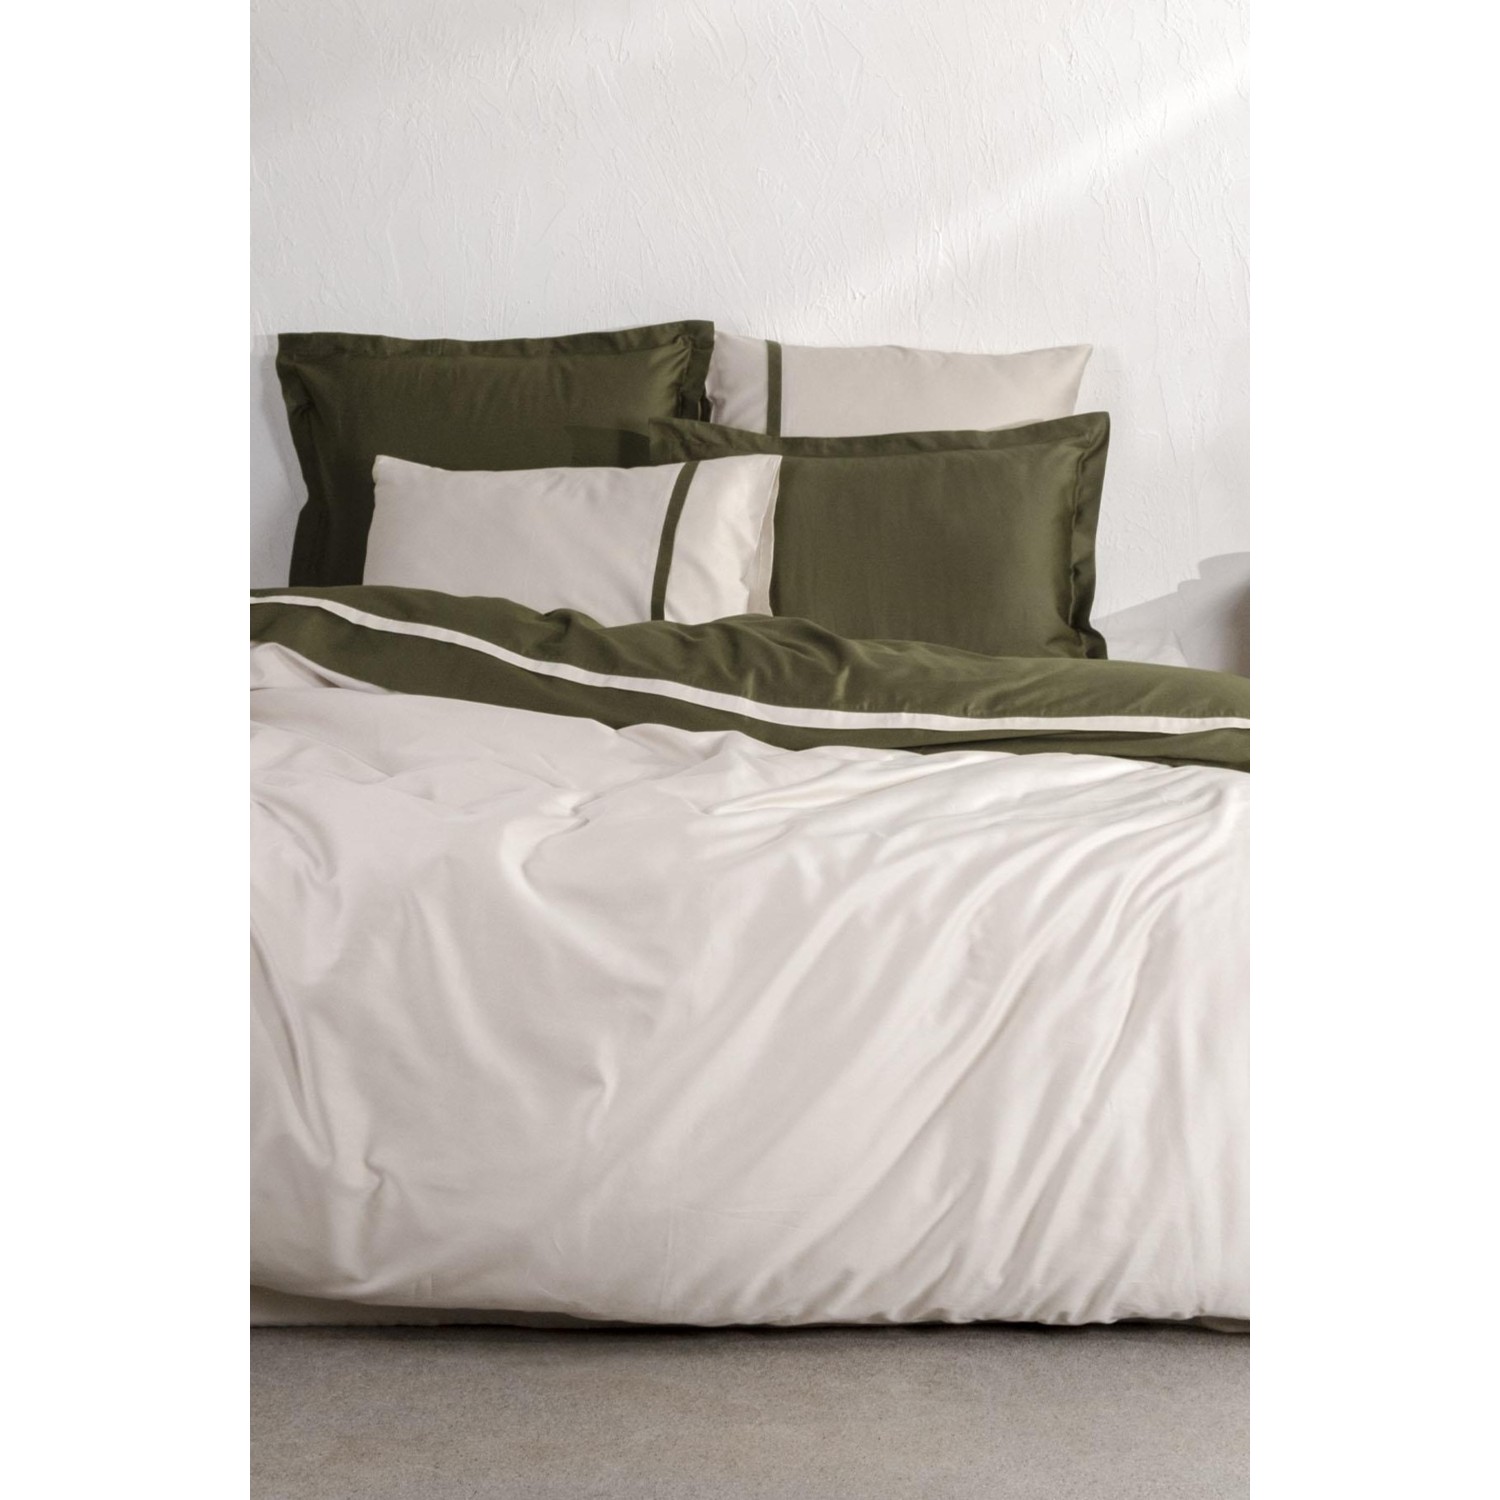 Экокотон, новый базовый Комплект постельного белья королевского размера, 100% органический хлопок, атлас, зеленый, 240X220 см